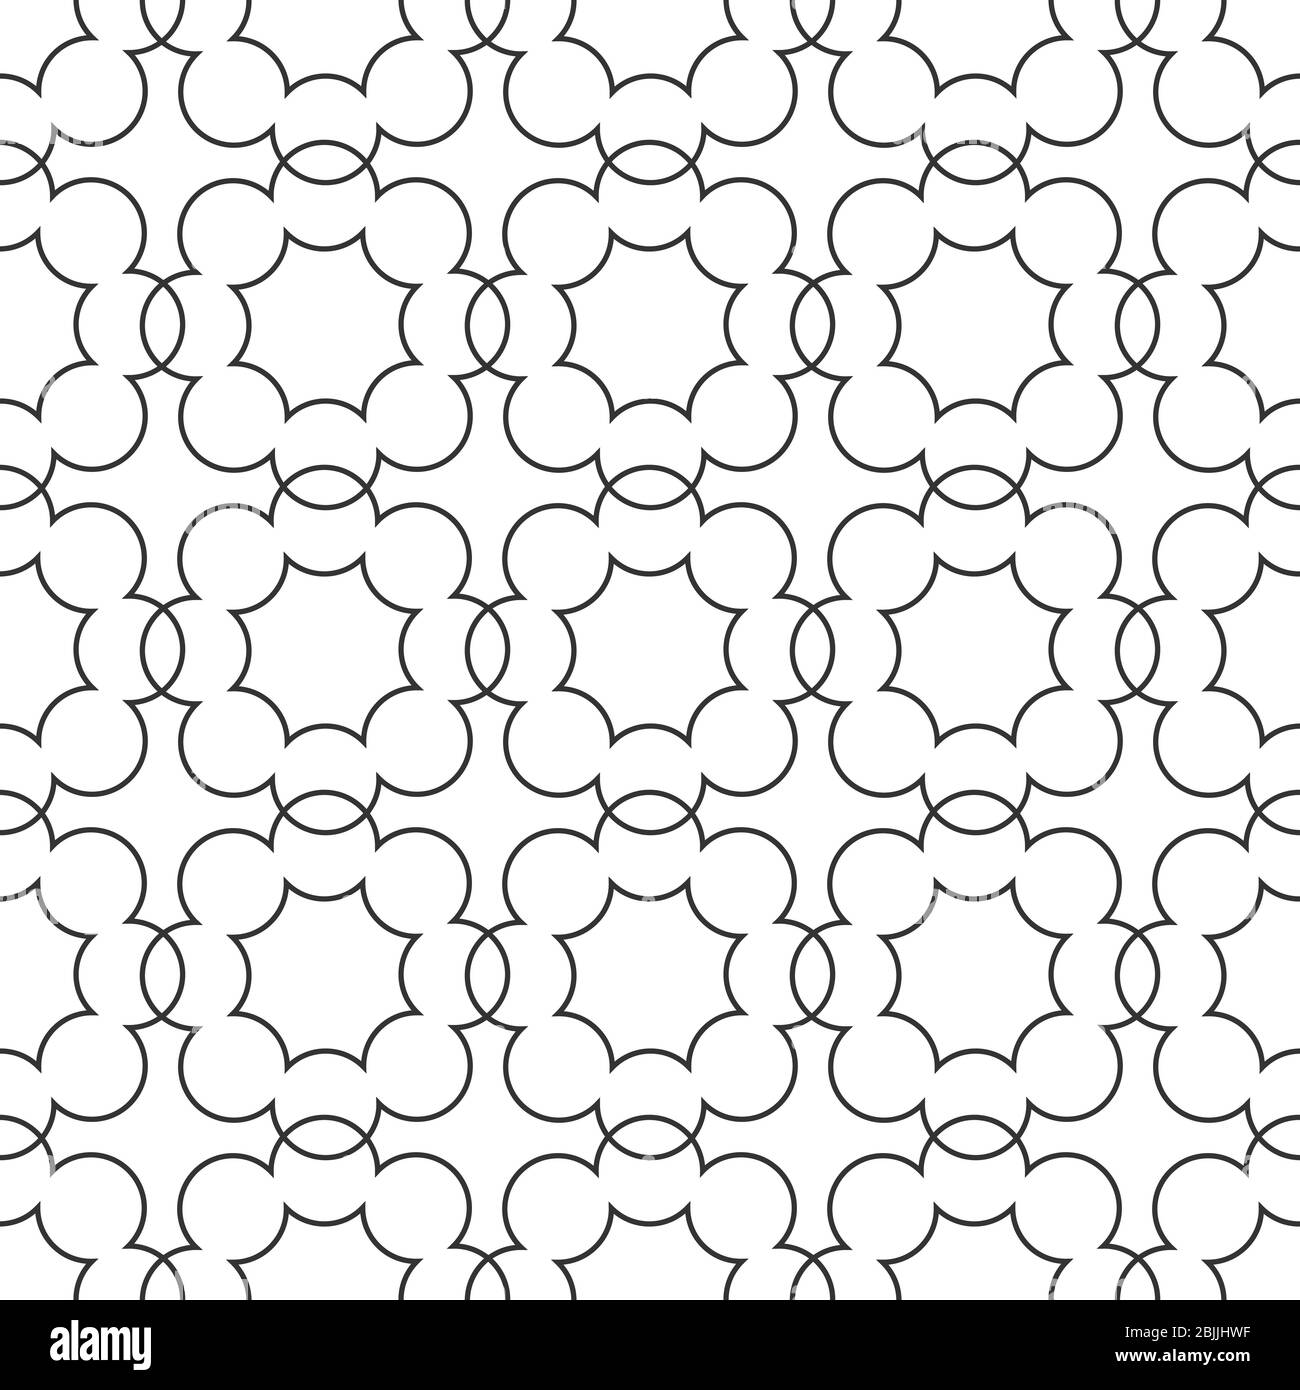 Vektor monochrome nahtlose Hand-gezeichnete Muster von beliebigen Linien des Quadrats. Stock Illustration für Hintergründe, Textilien und Verpackungen. Stock Vektor